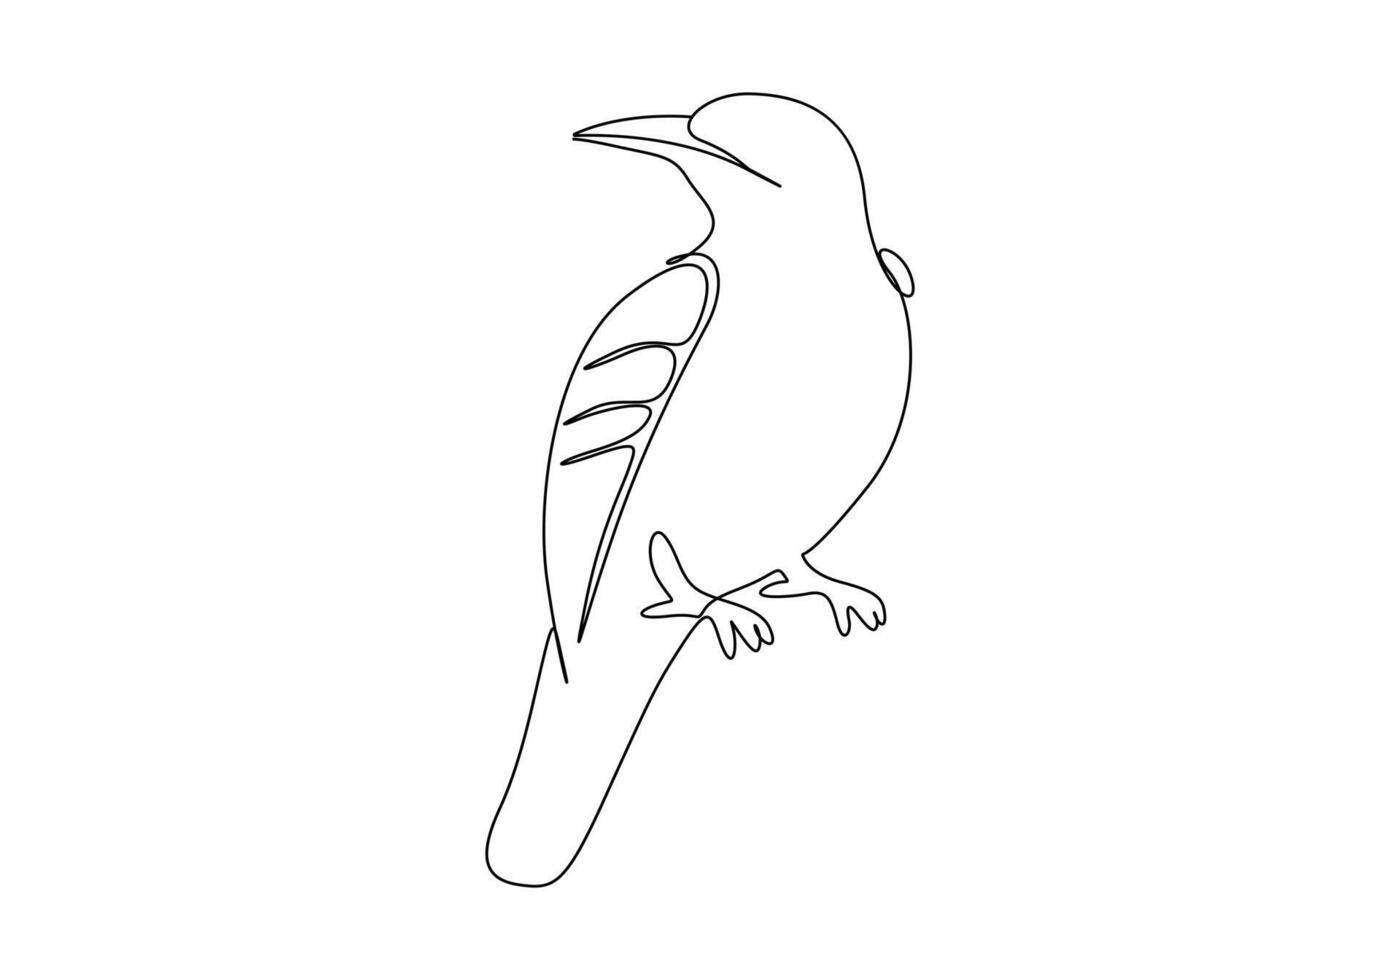 Bird single line drawing digital illustration vector